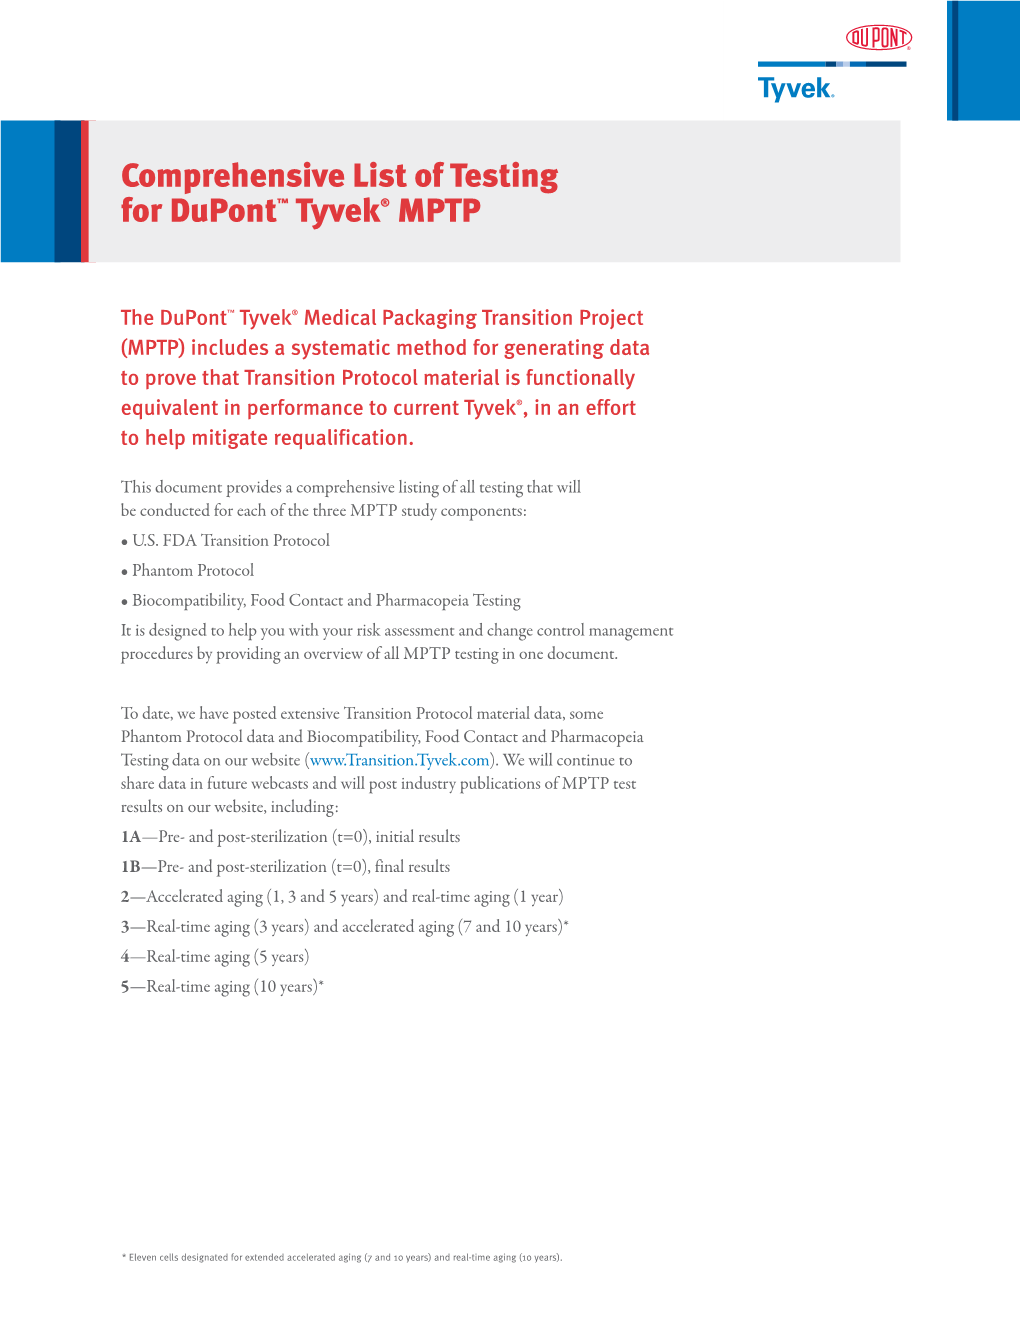 Comprehensive List of Testing for Dupont™ Tyvek® MPTP